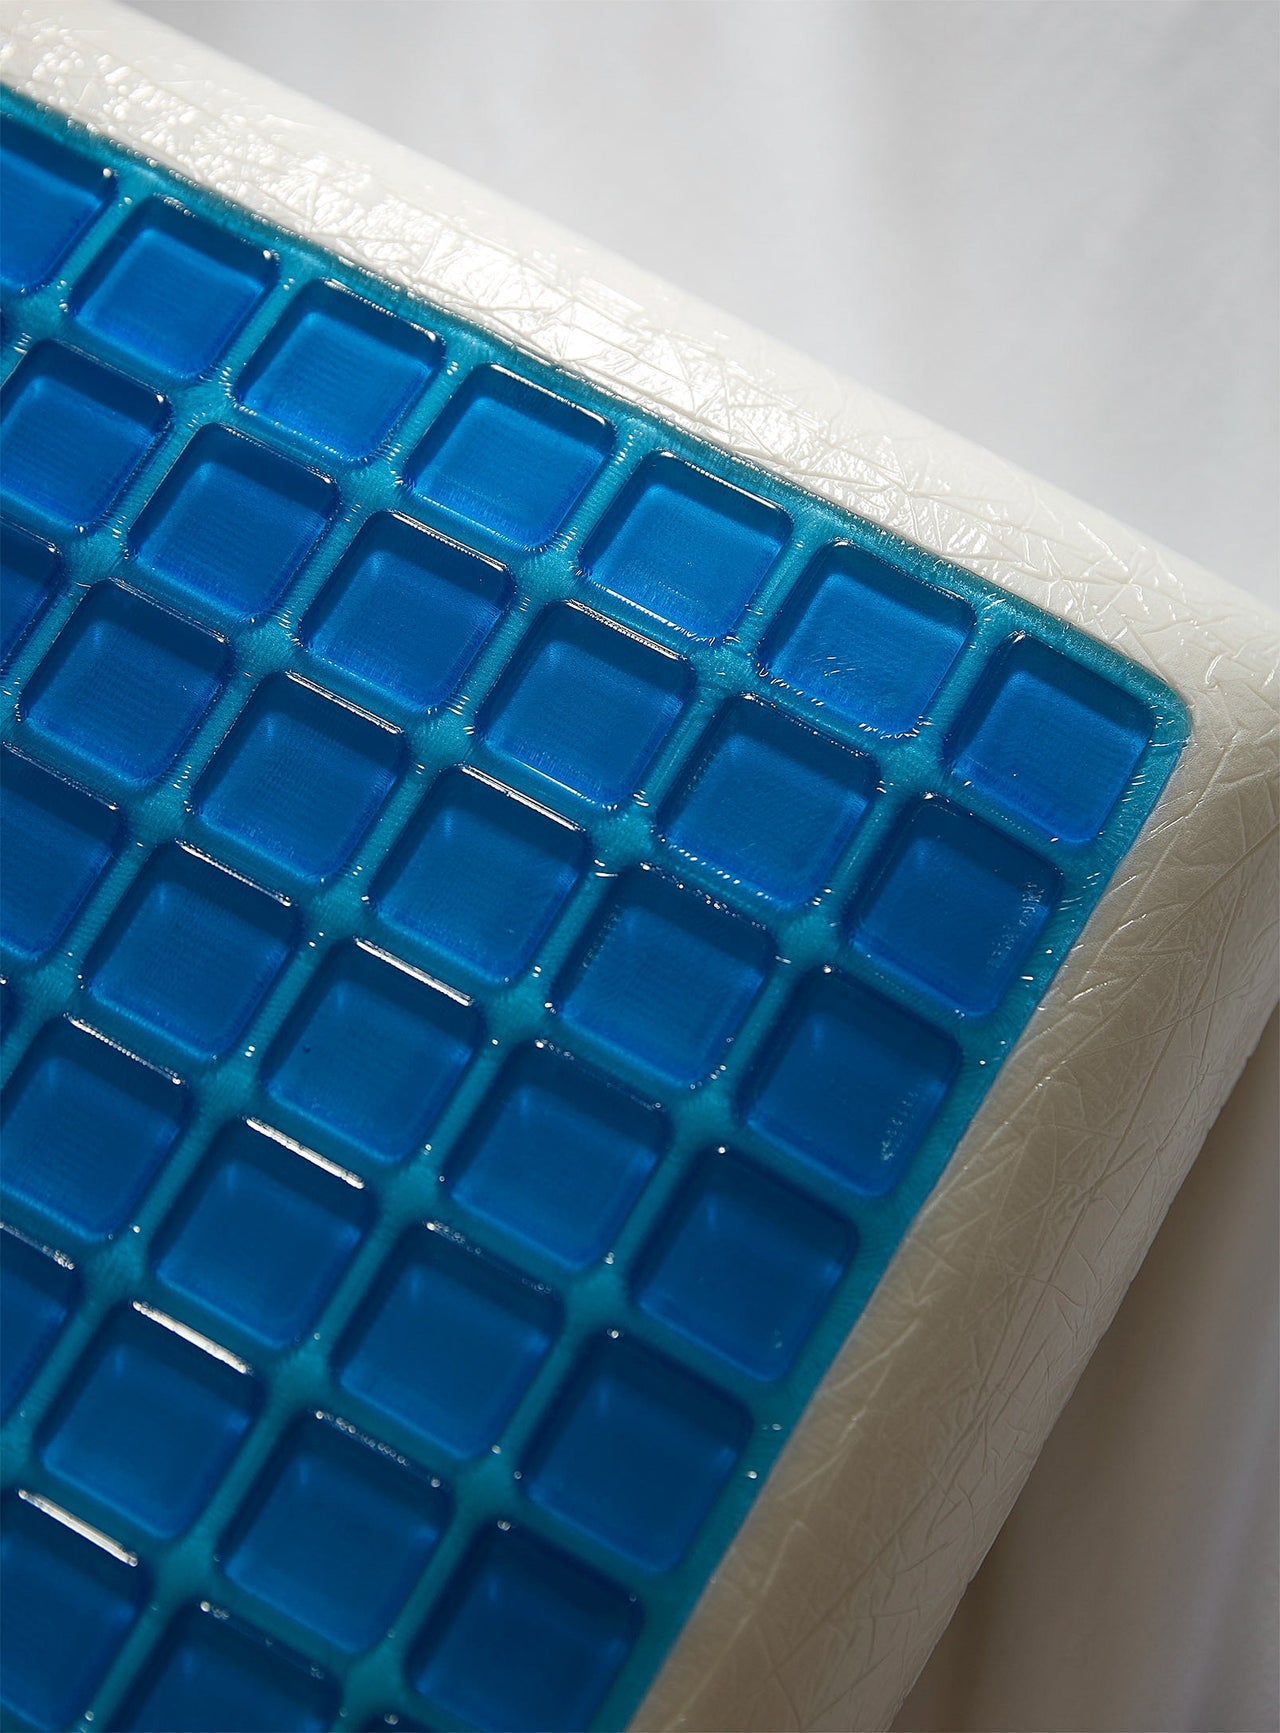 Cooling gel memory foam pillow